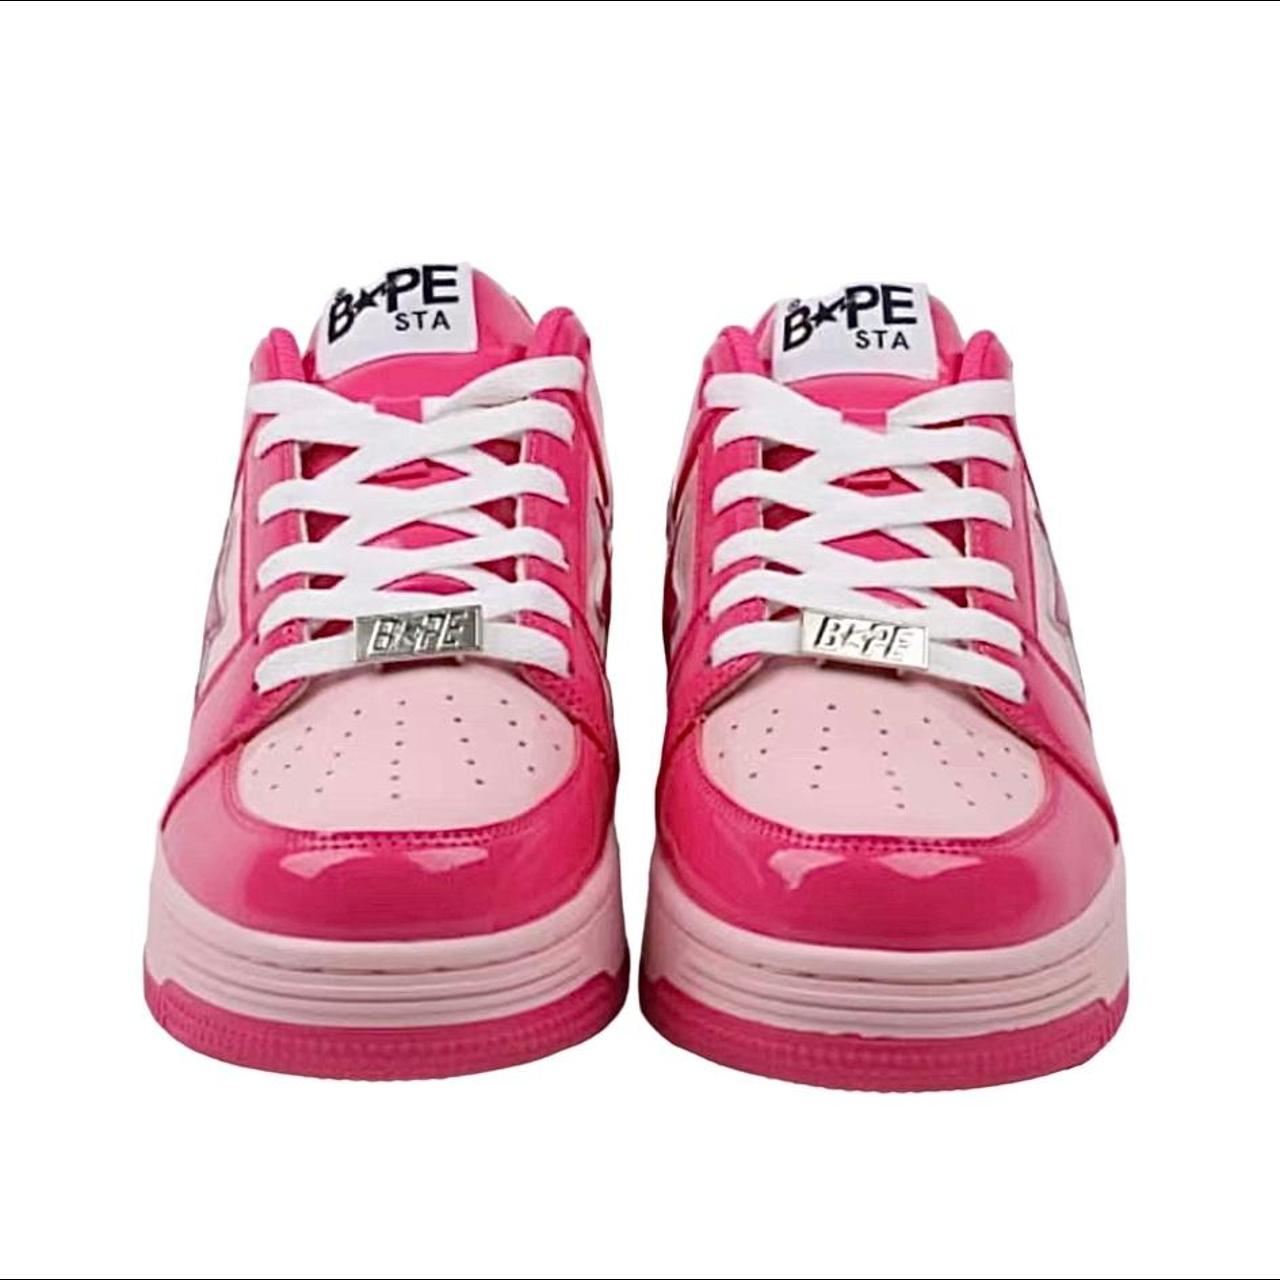 ʕ•̫͡•ʕ•̫͡•ʔ•̫͡•ʔ, 2012 Hello Kitty x Bape Sta Shoes, This